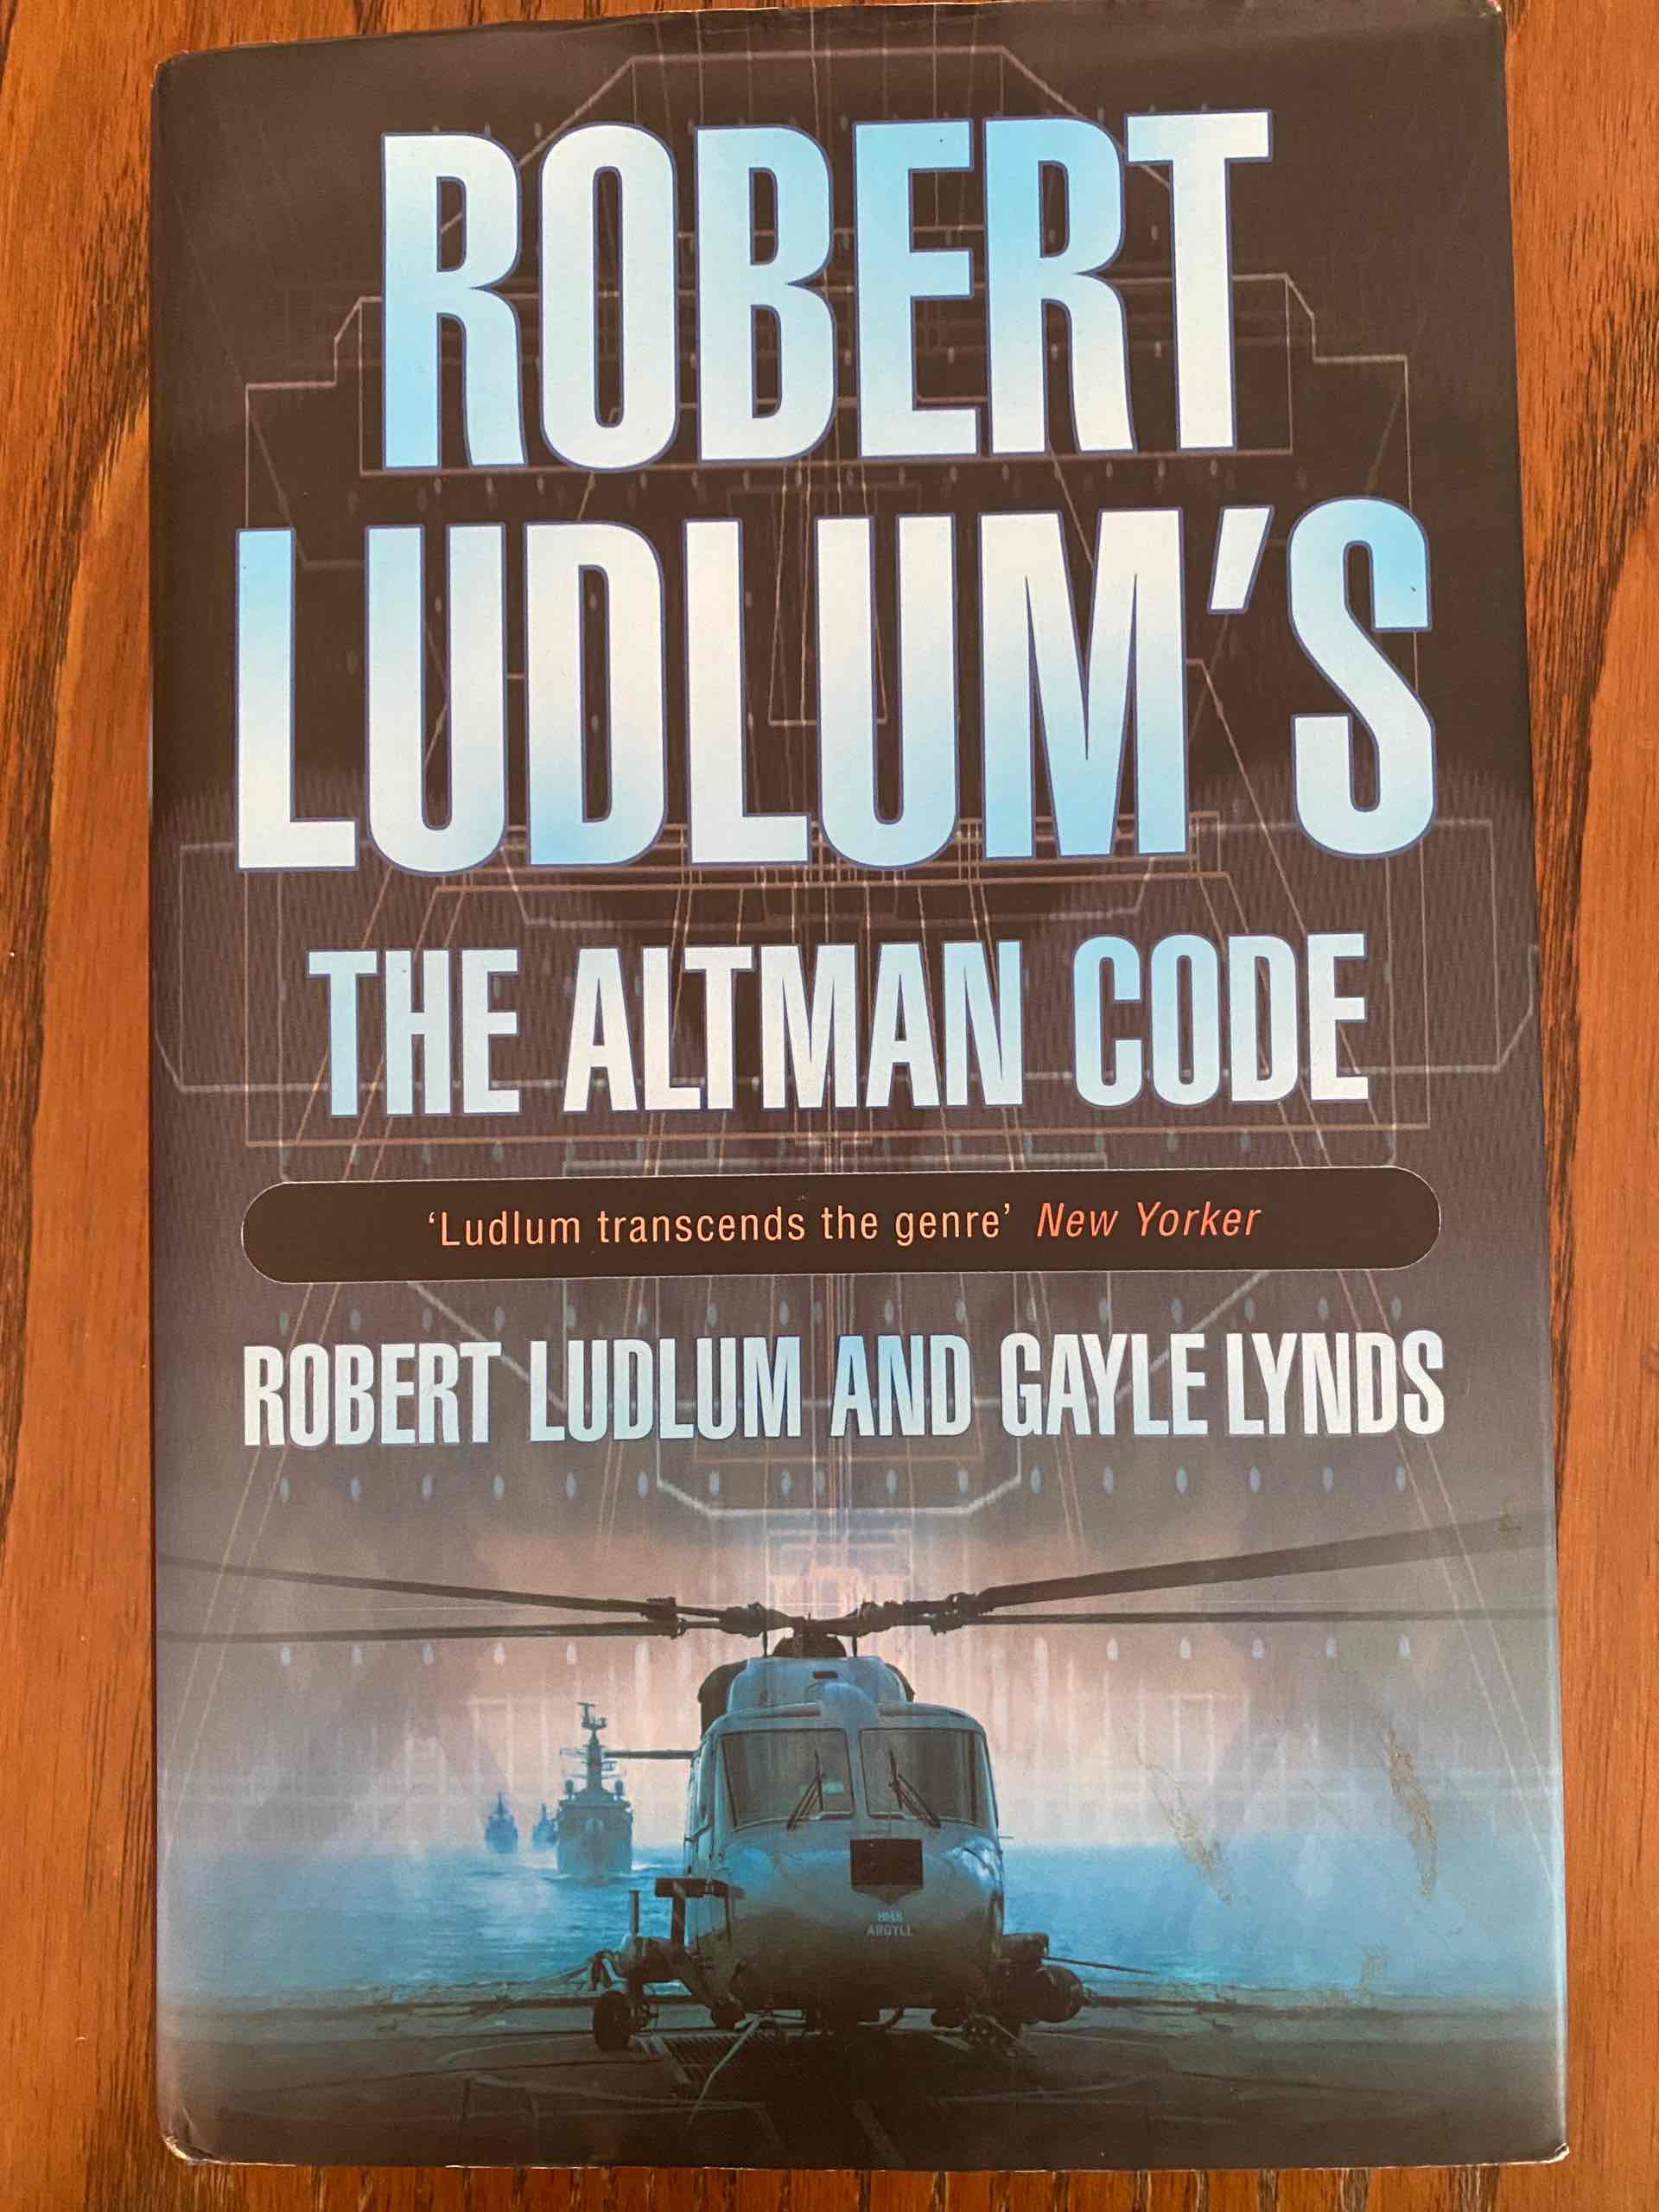 The altman code